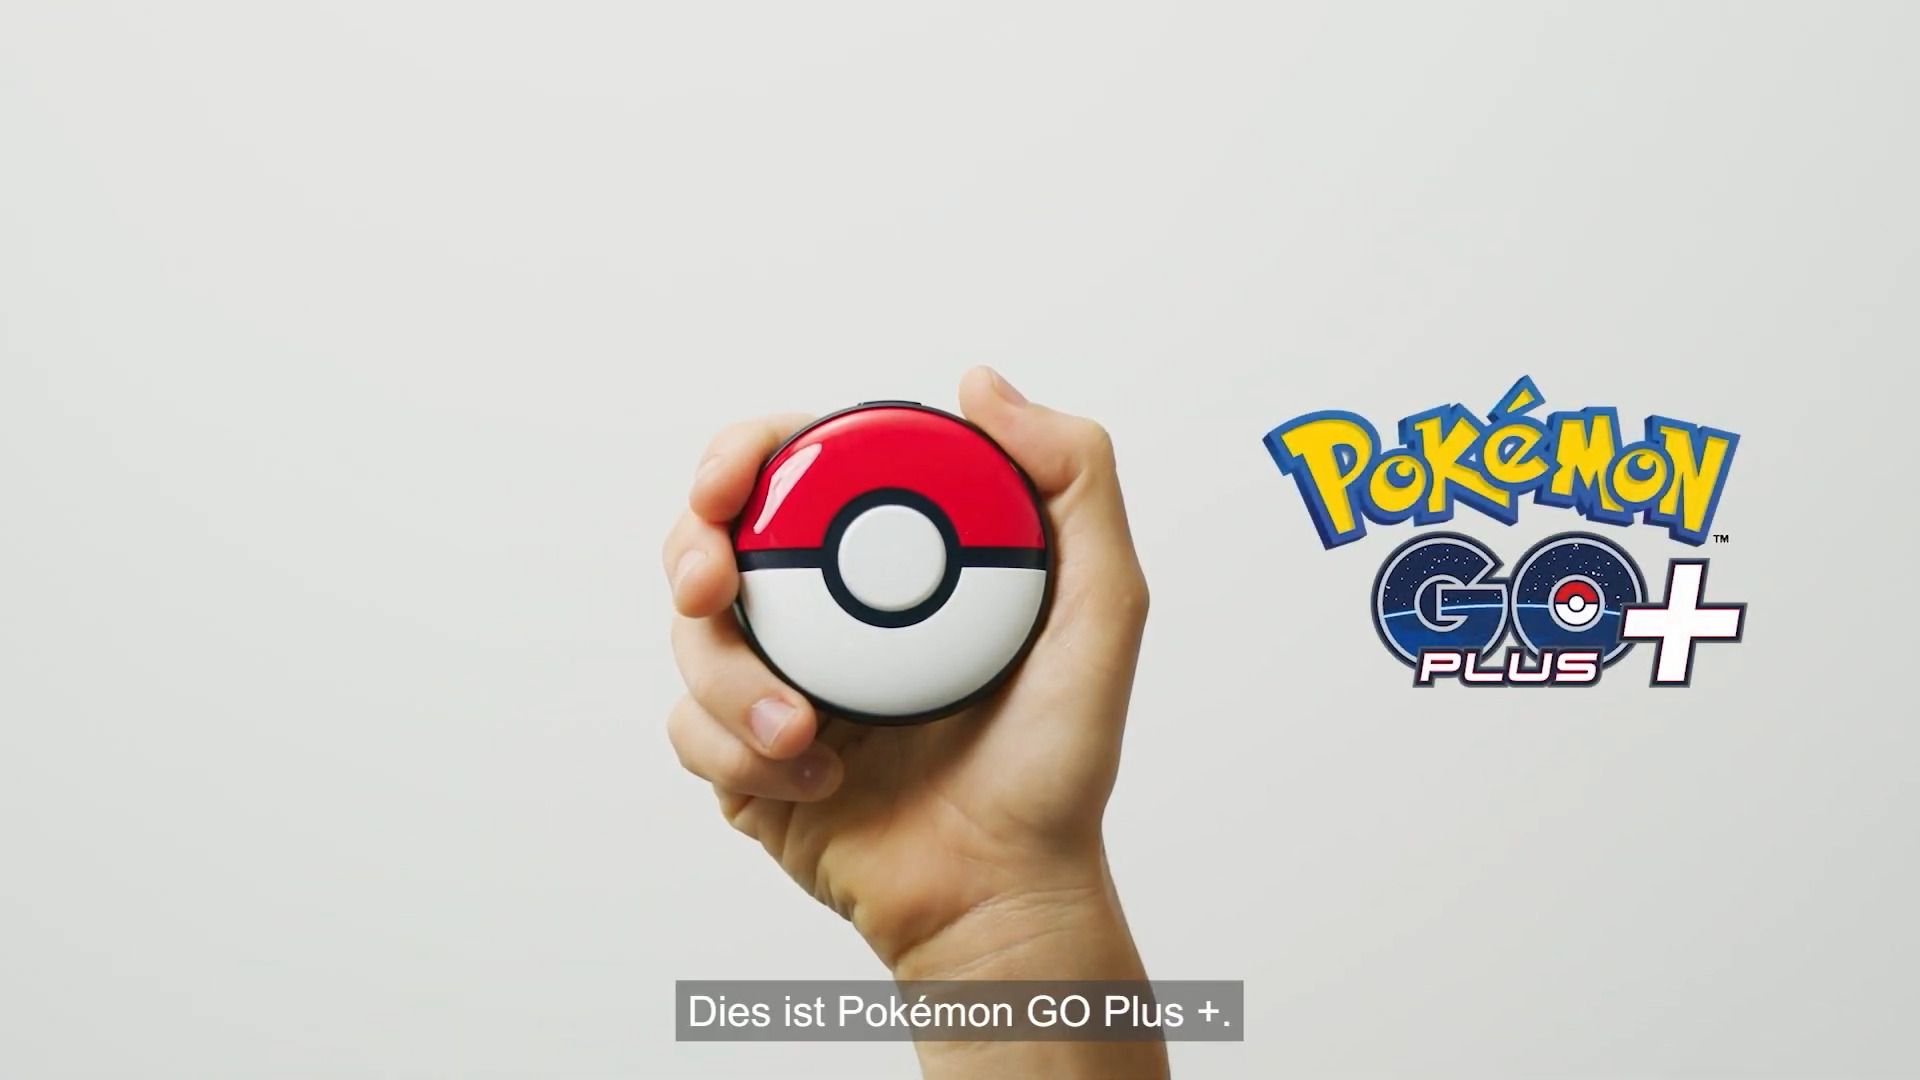 #Pokémon GO Plus+ soll eure Erfahrung mit Pokémon Sleep und Pokémon GO verbessern